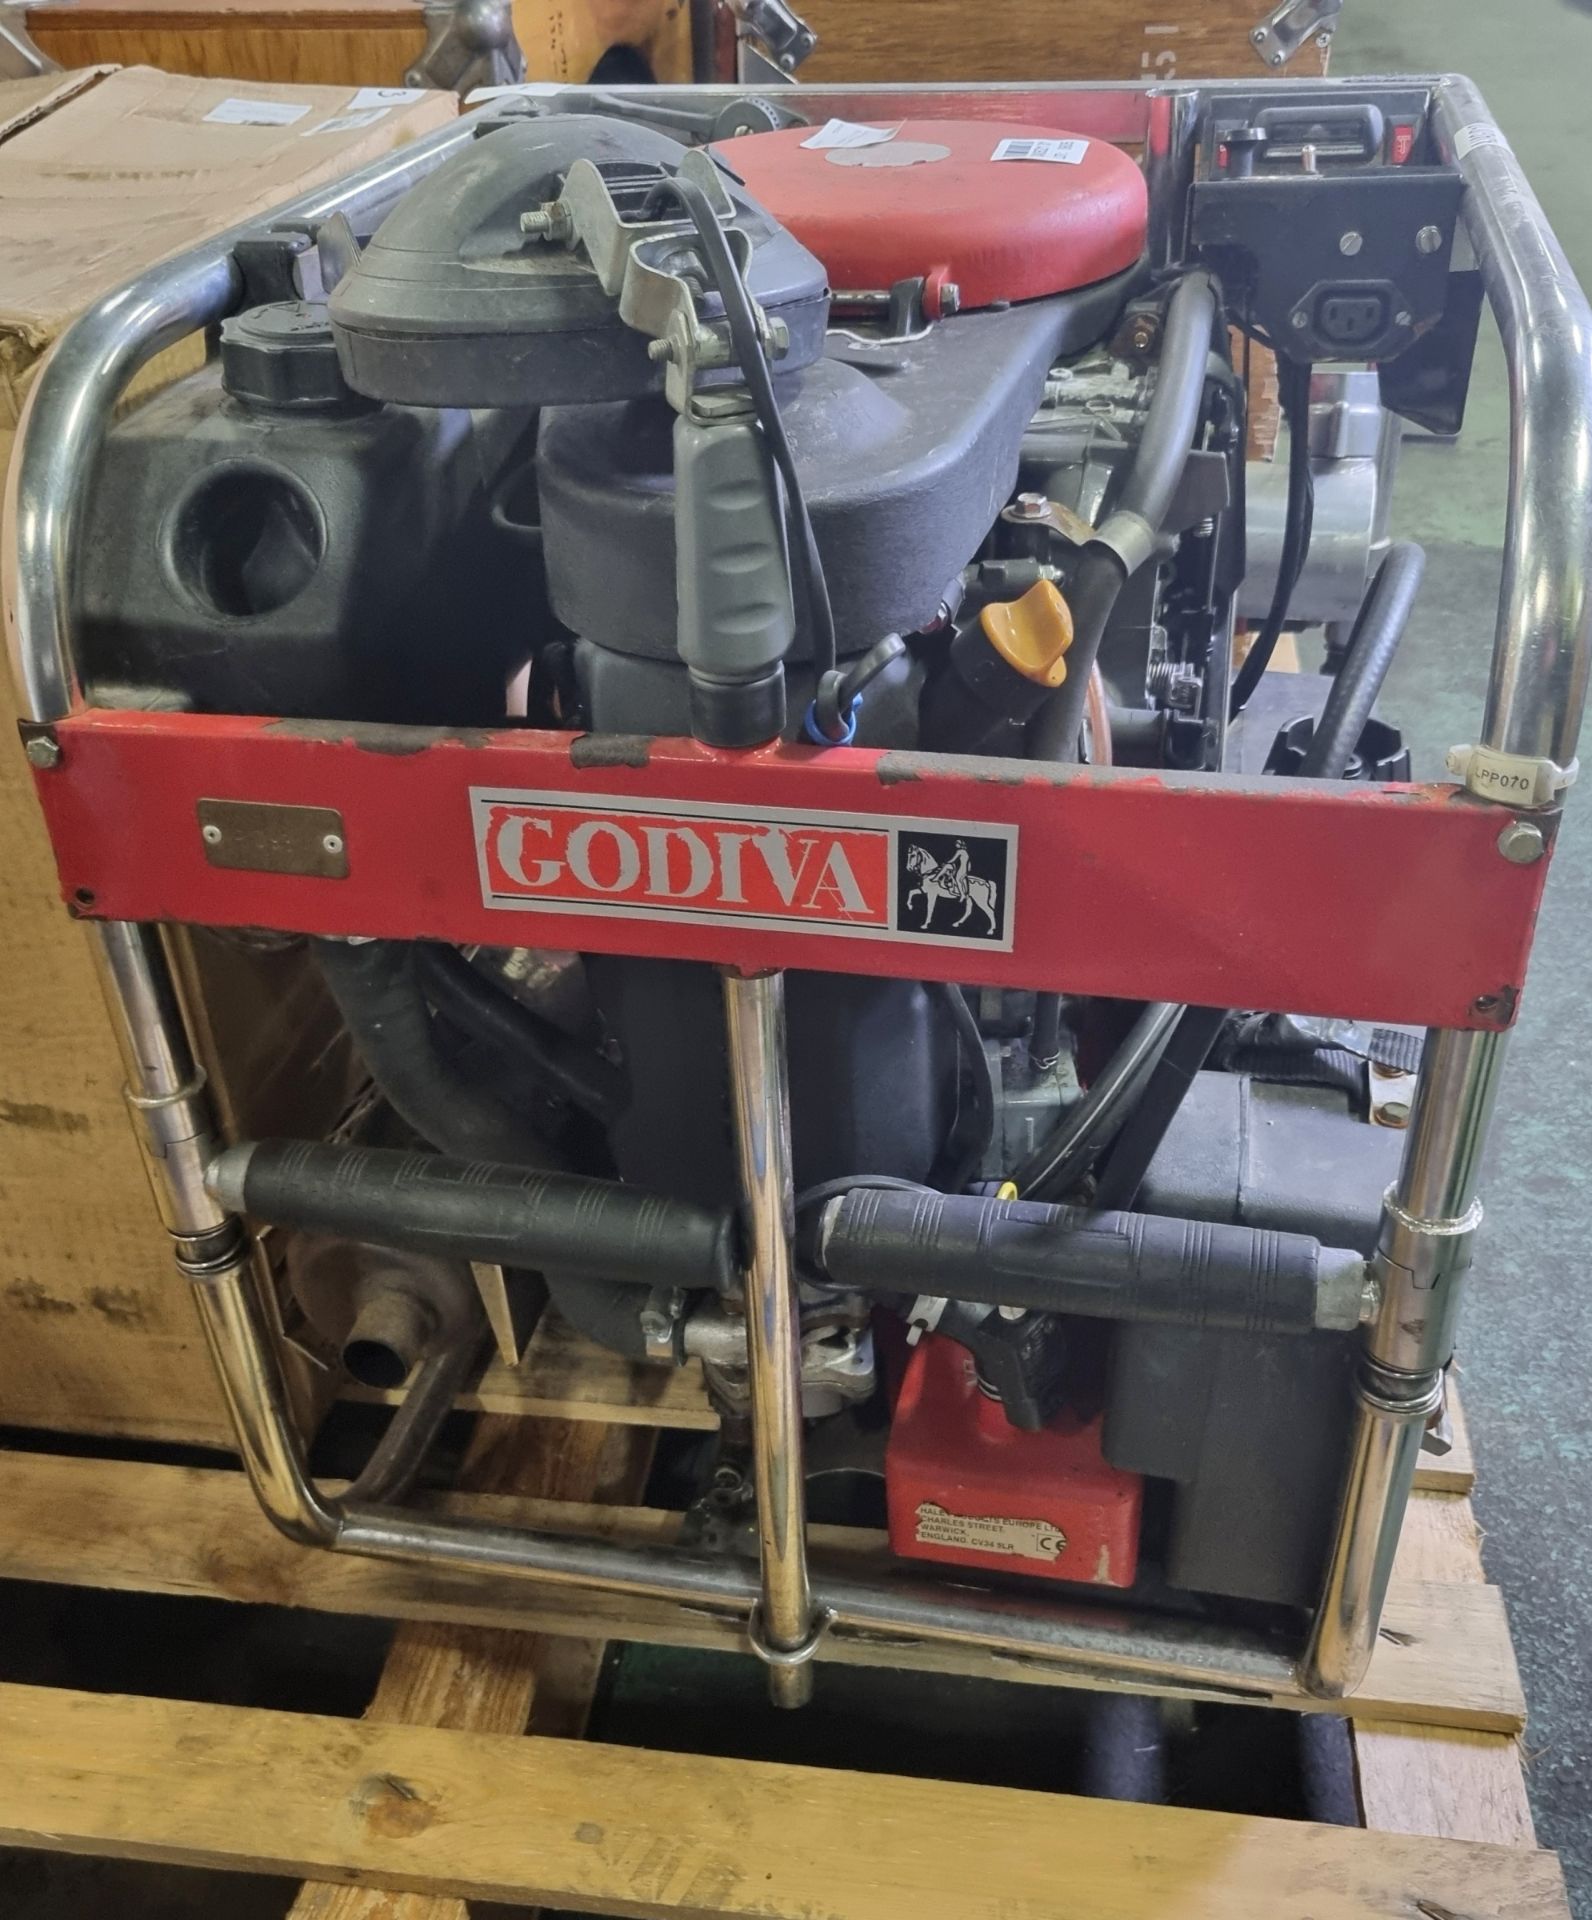 Godiva 10/10 fire pump - W 500 x D 700 x H 600mm - Image 3 of 8